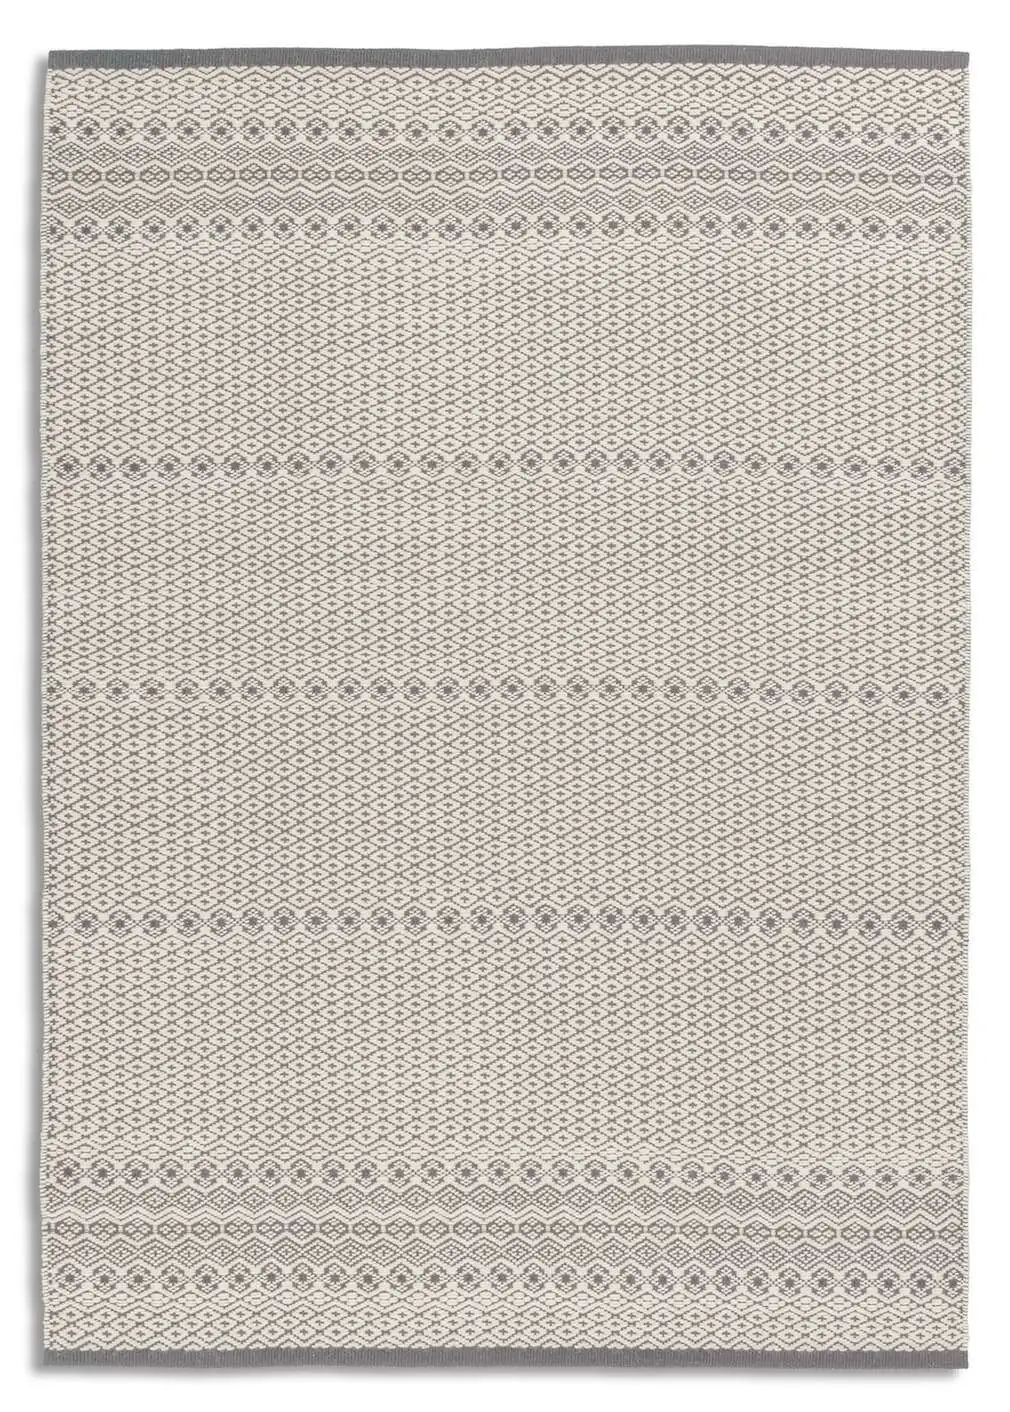 Morrelino 6431-201 Handgewebt aus Wolle und Baumwolle